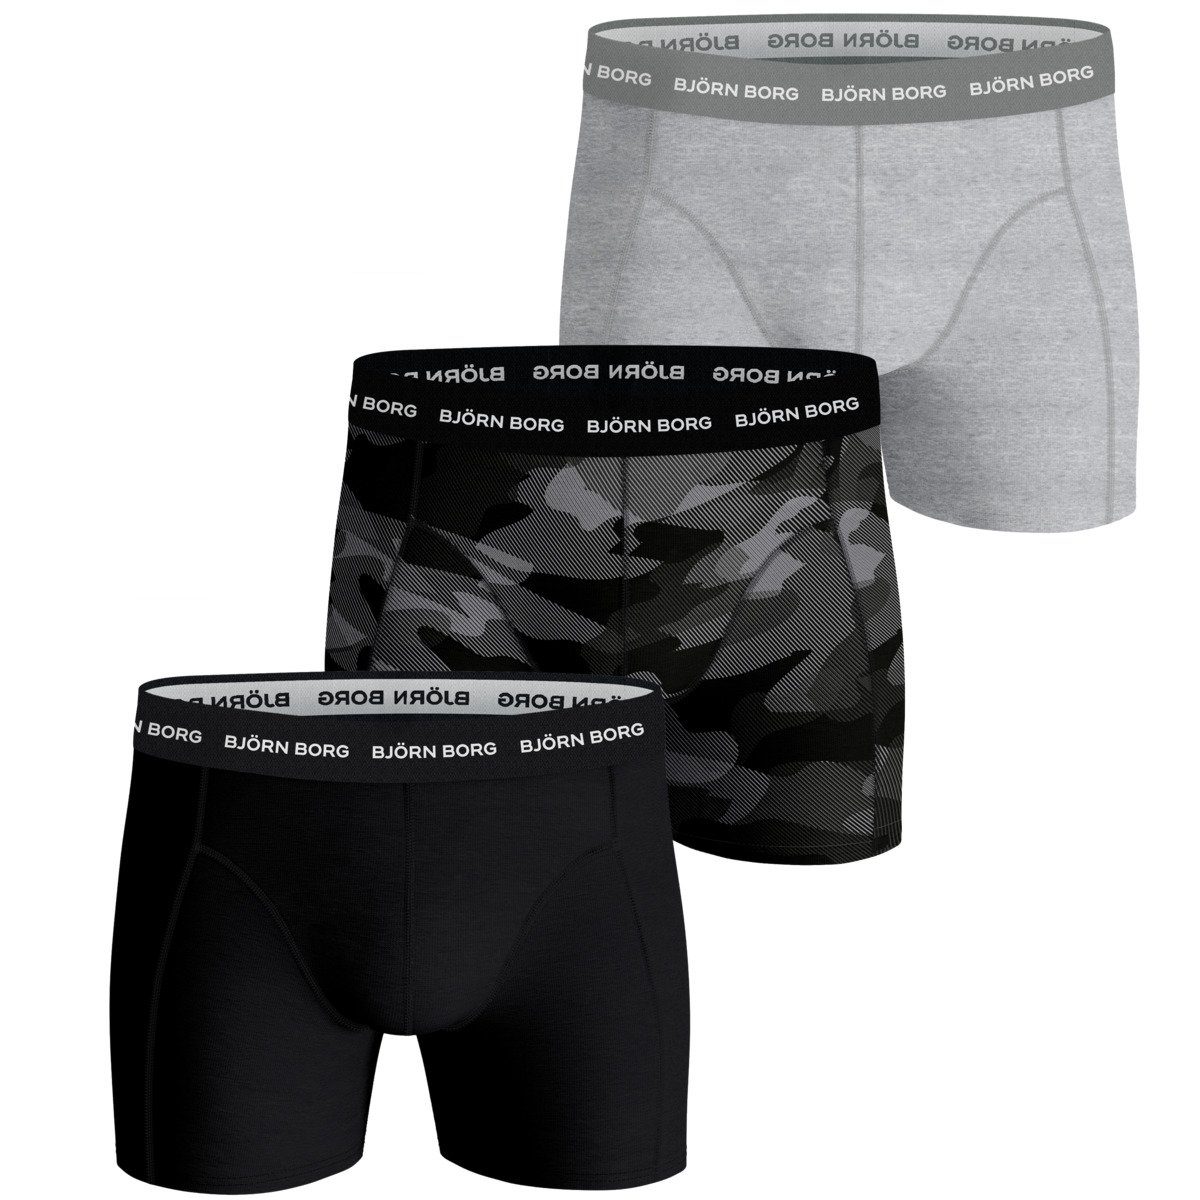 Björn 3er Boxershorts schwarz/grau/camouflage Shadeline Herren (3-St) Borg Pack Essential